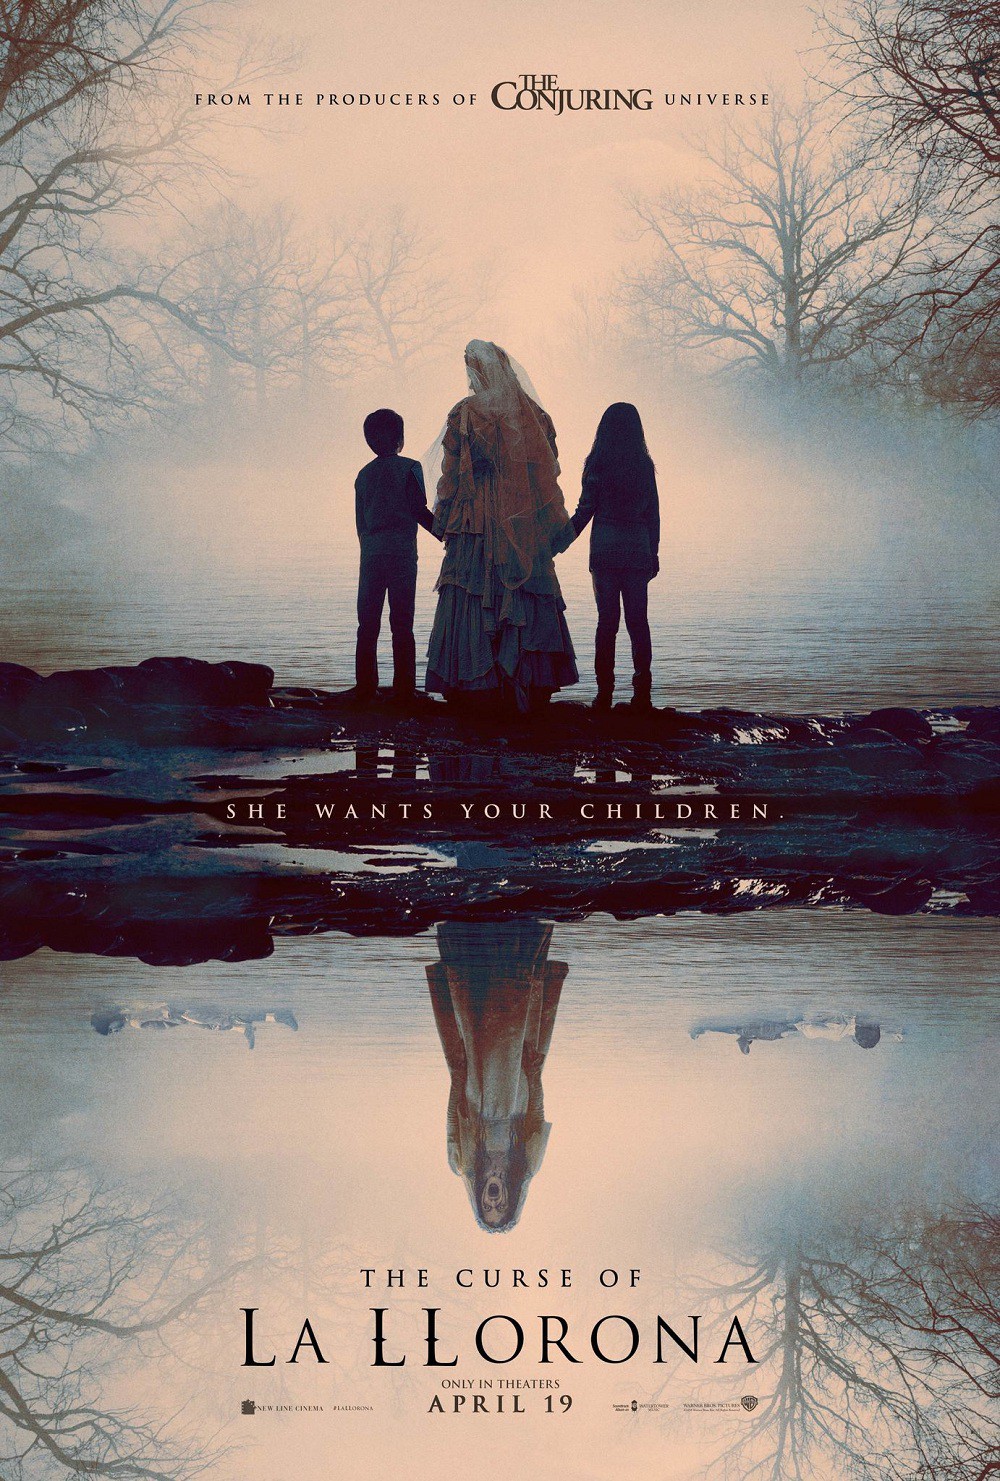 Phim về oan hồn bà mẹ mất con và loạt tác phẩm kinh dị sắp ra mắt năm 2019 - Ảnh 1.